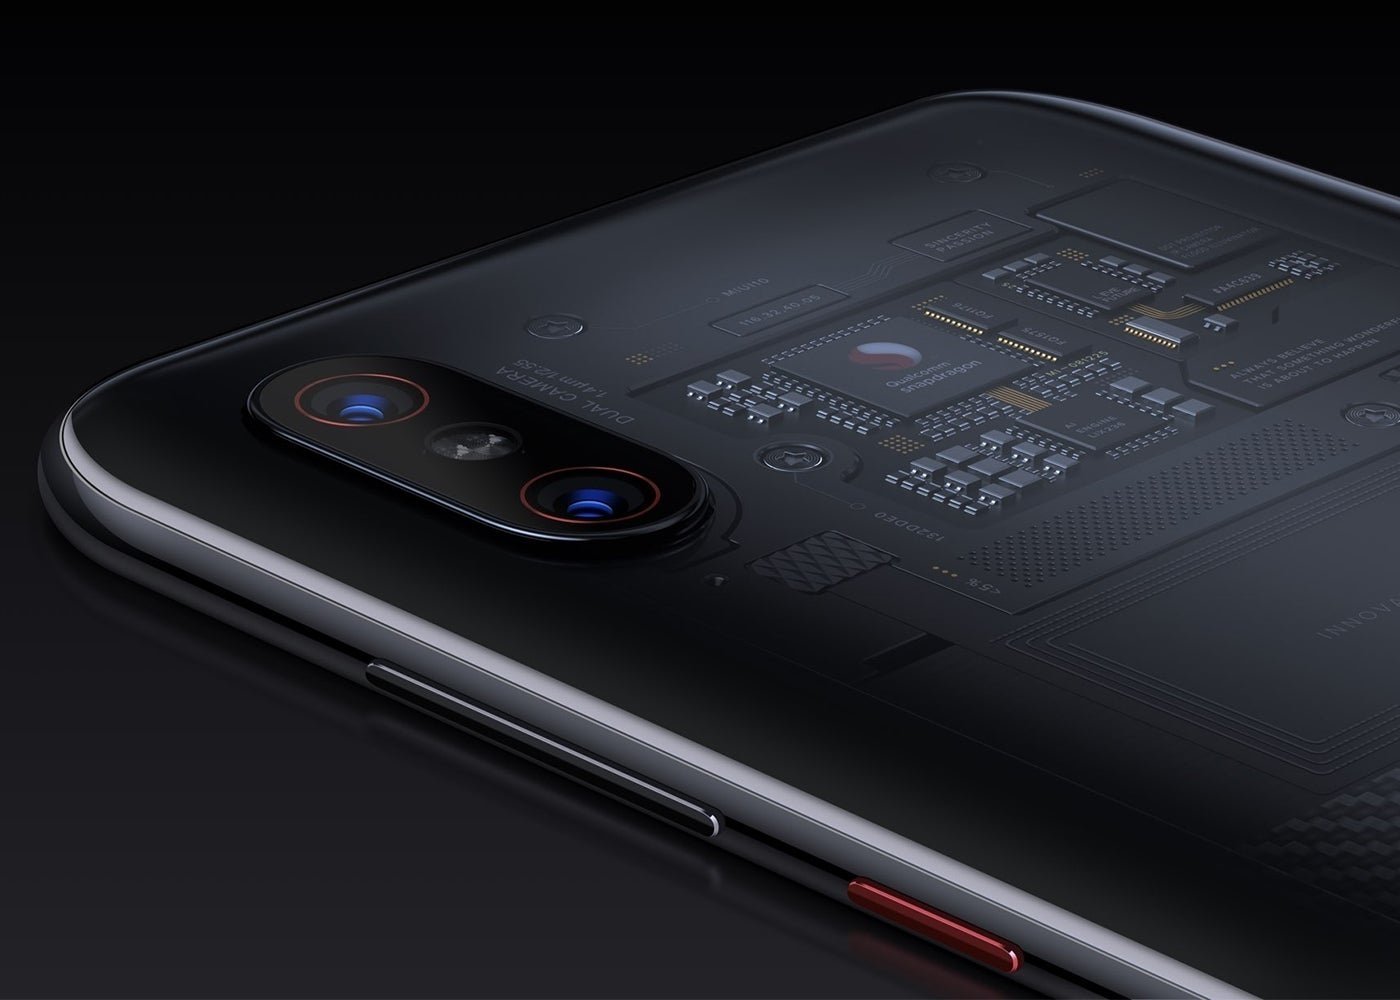 El nuevo Xiaomi Mi 8 es oficial: todas las características y precios